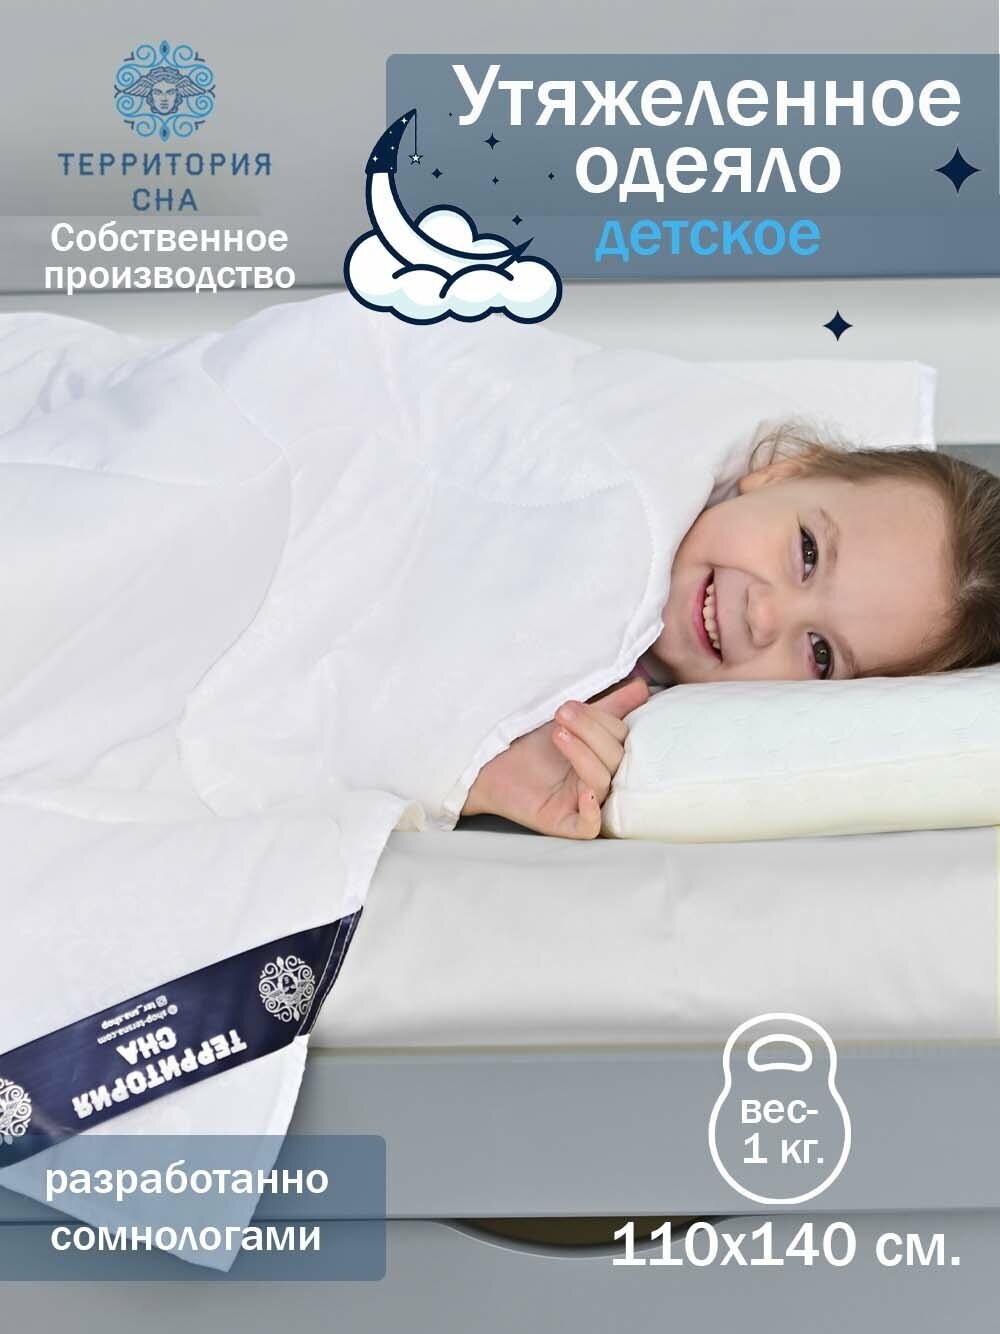 Одеяло детское утяжеленное Swan 110х140 см. с наполнителем из лебяжьего пуха. Всесезонное, гипоаллергенное